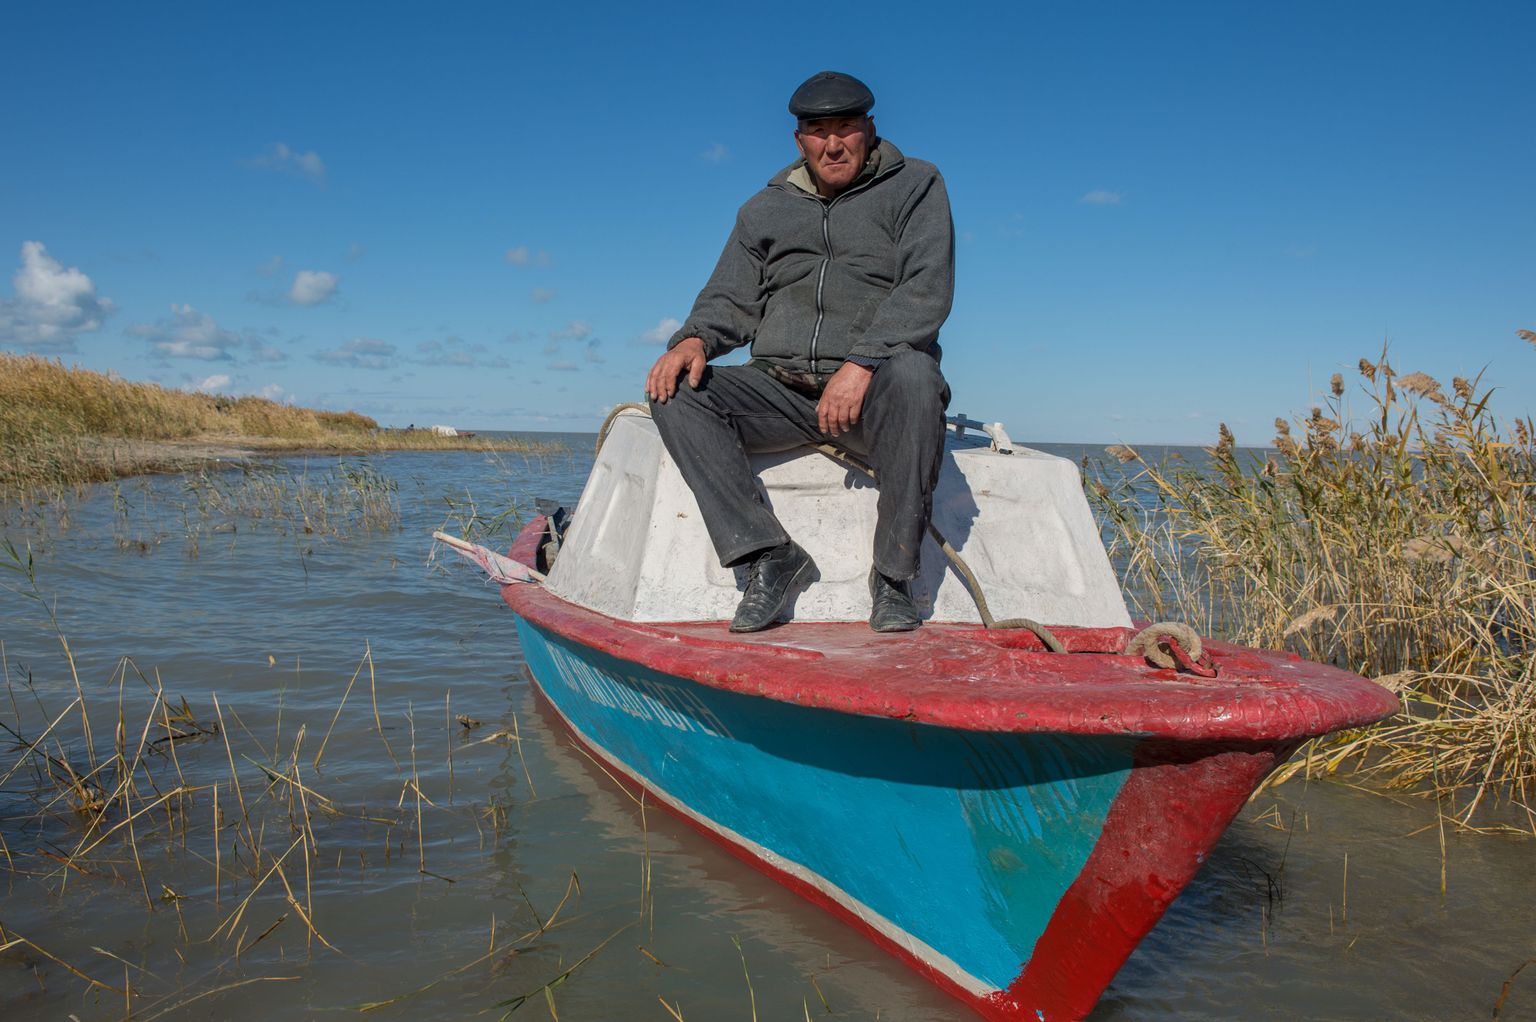 Žaksõlõk Dilžanov ootab Väikse Araali ääres oma kolme poega järvelt tagasi.